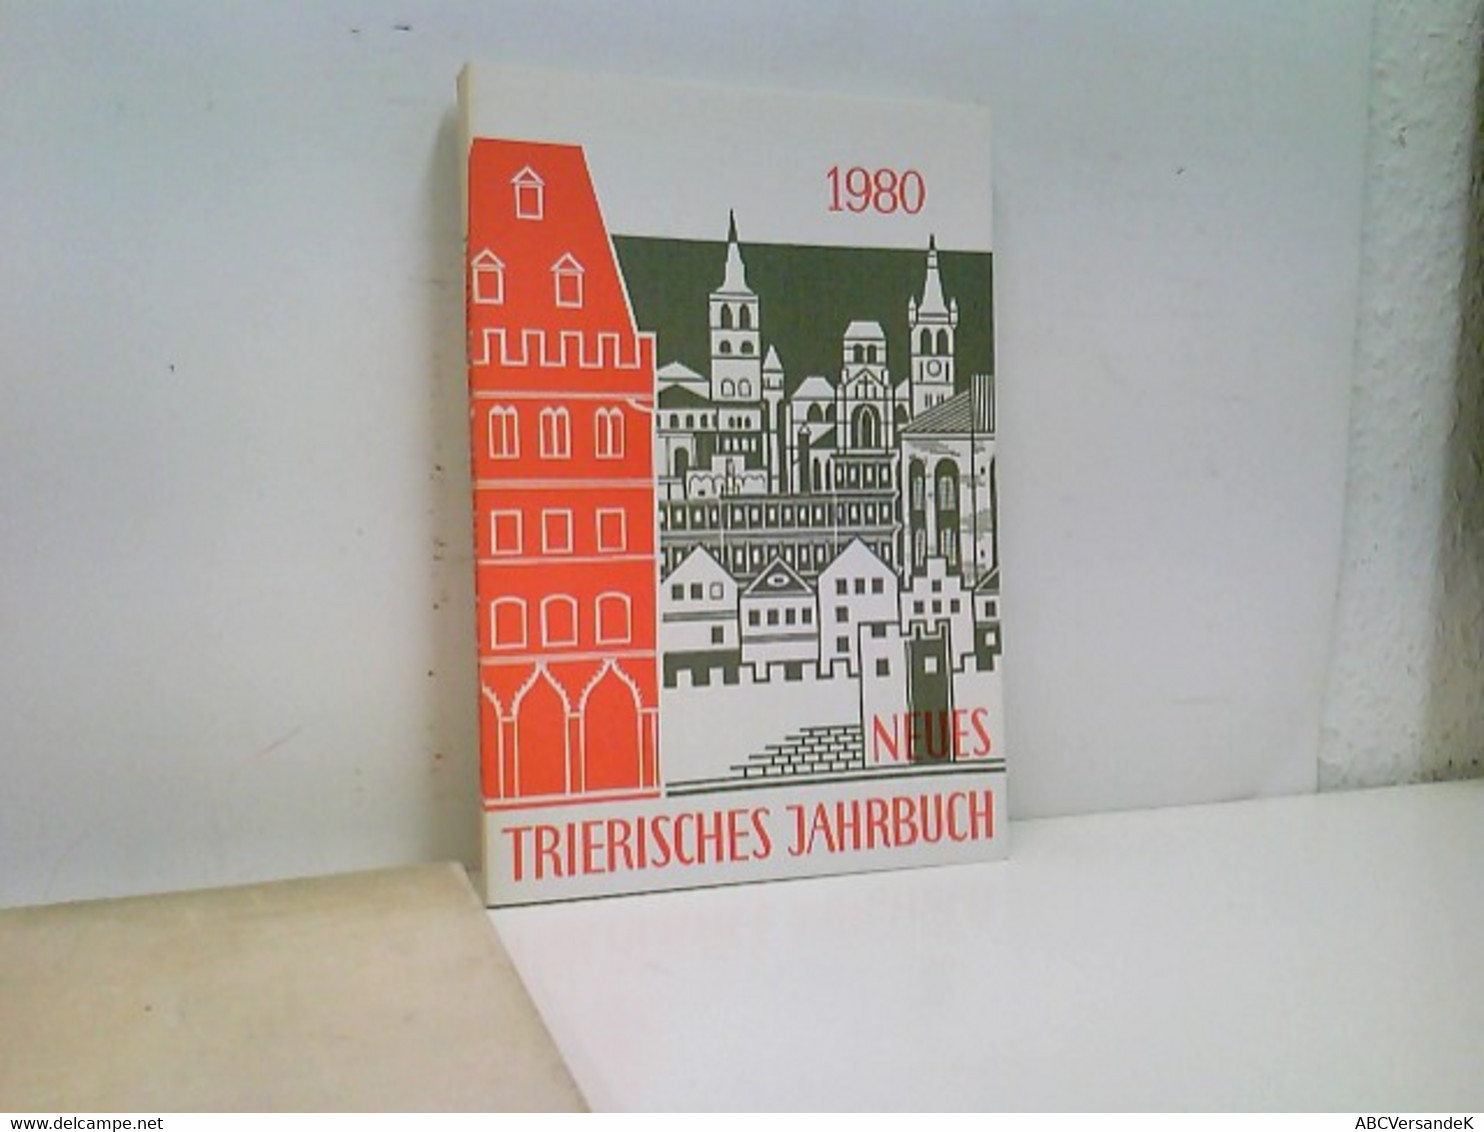 Neues Trierisches Jahrbuch 1980 - Deutschland Gesamt